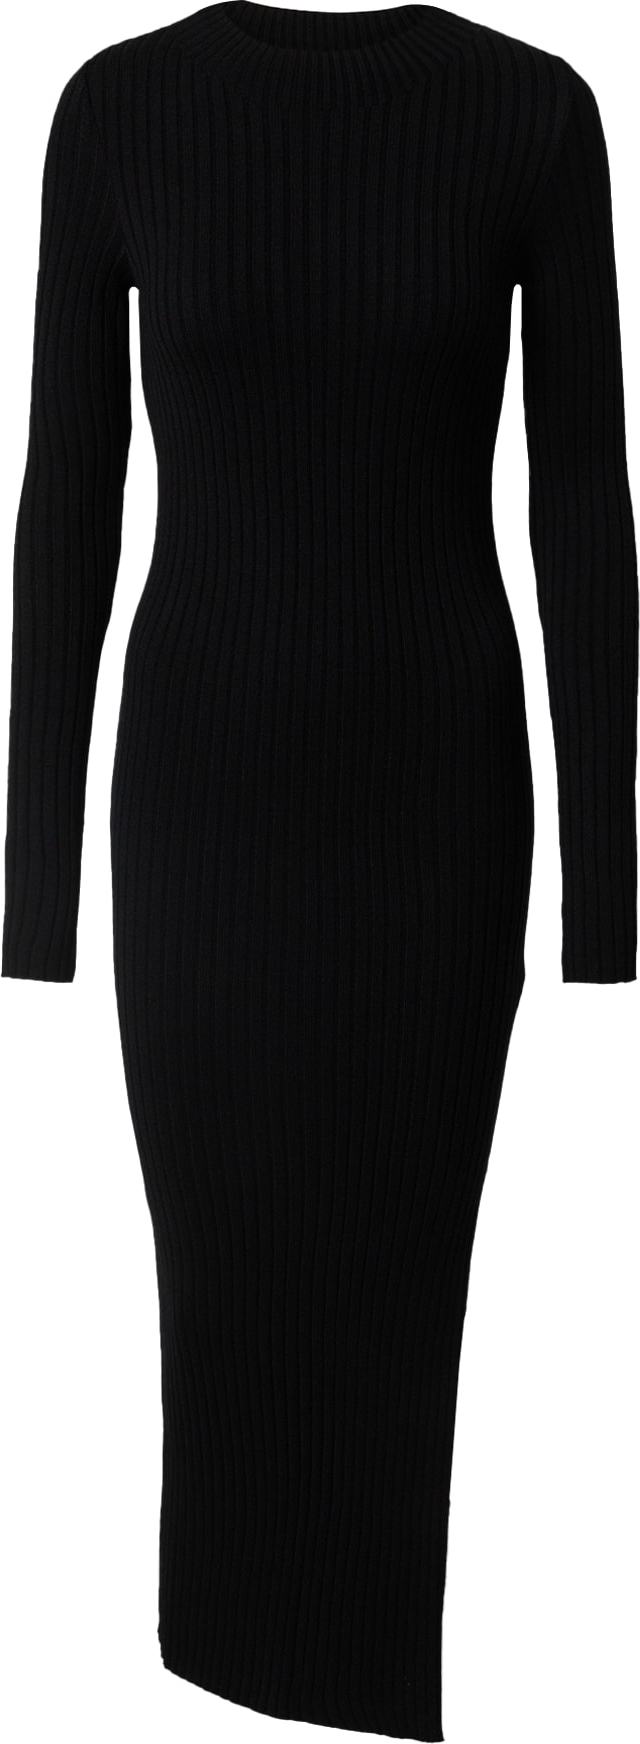 Úpletové šaty 'Ivana' SHYX černá